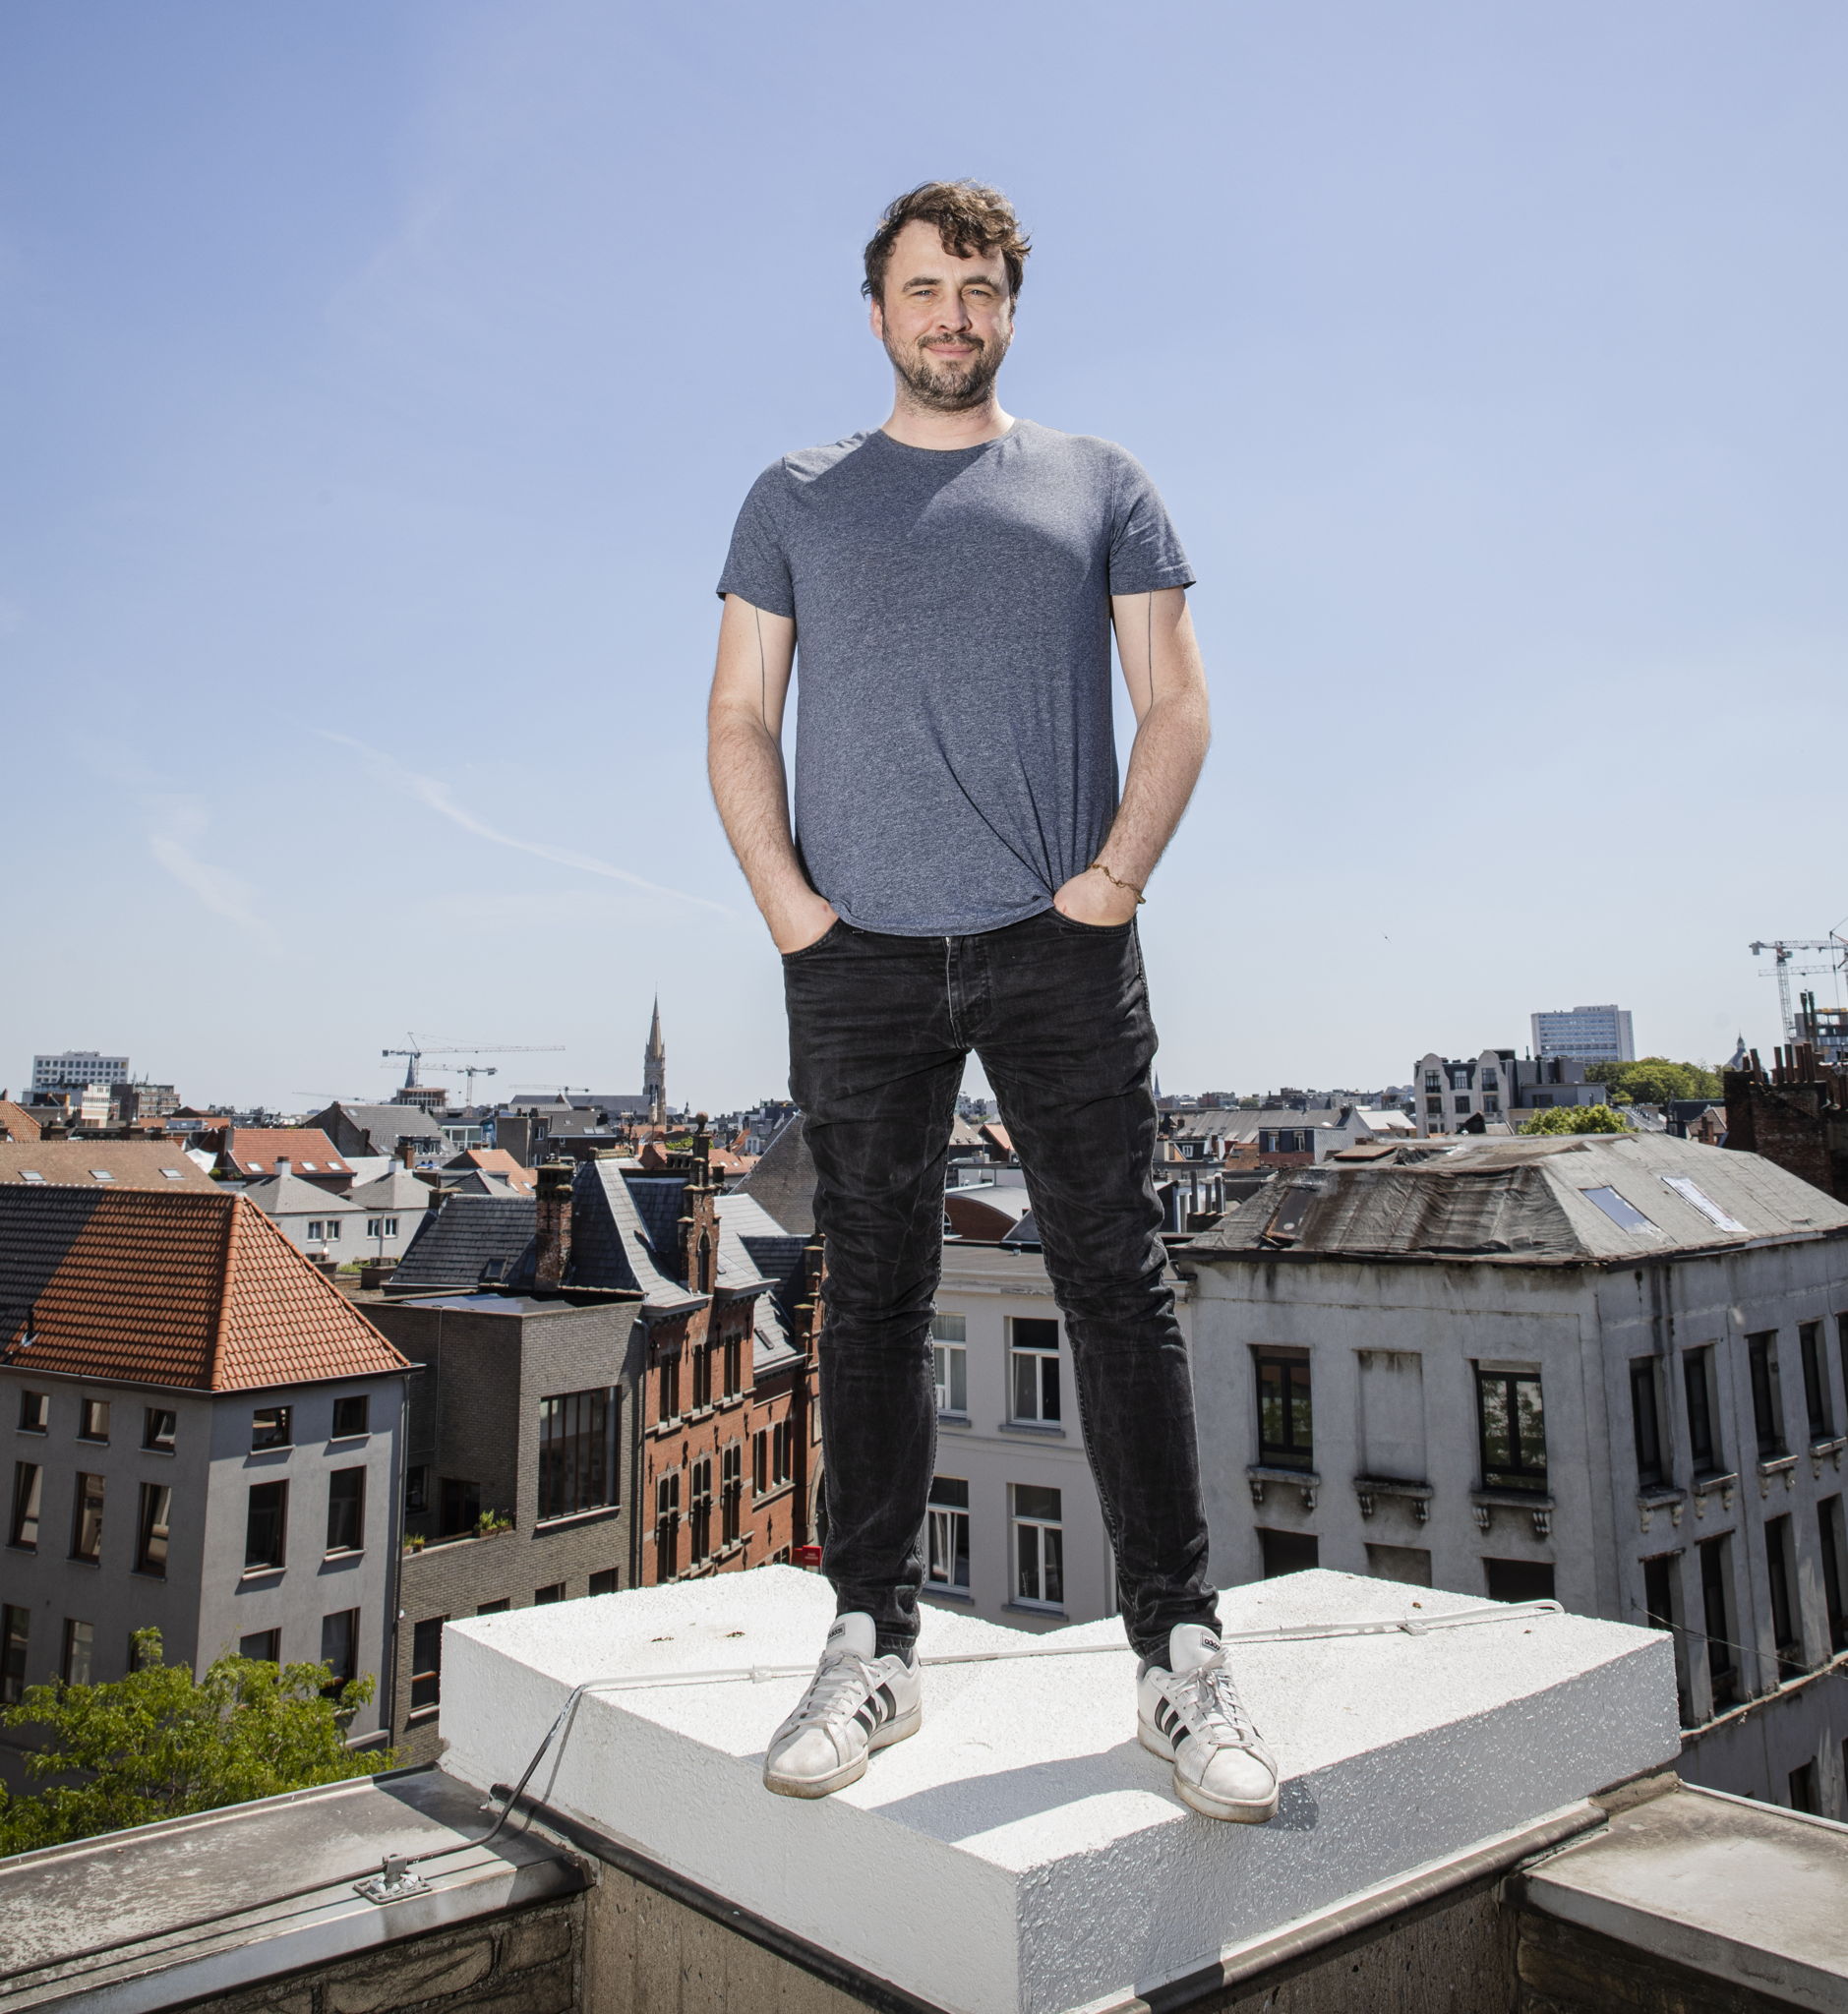 Lode Uytterschaut, CEO en founder ​
Start it @KBC (credit Wim Kempenaers)